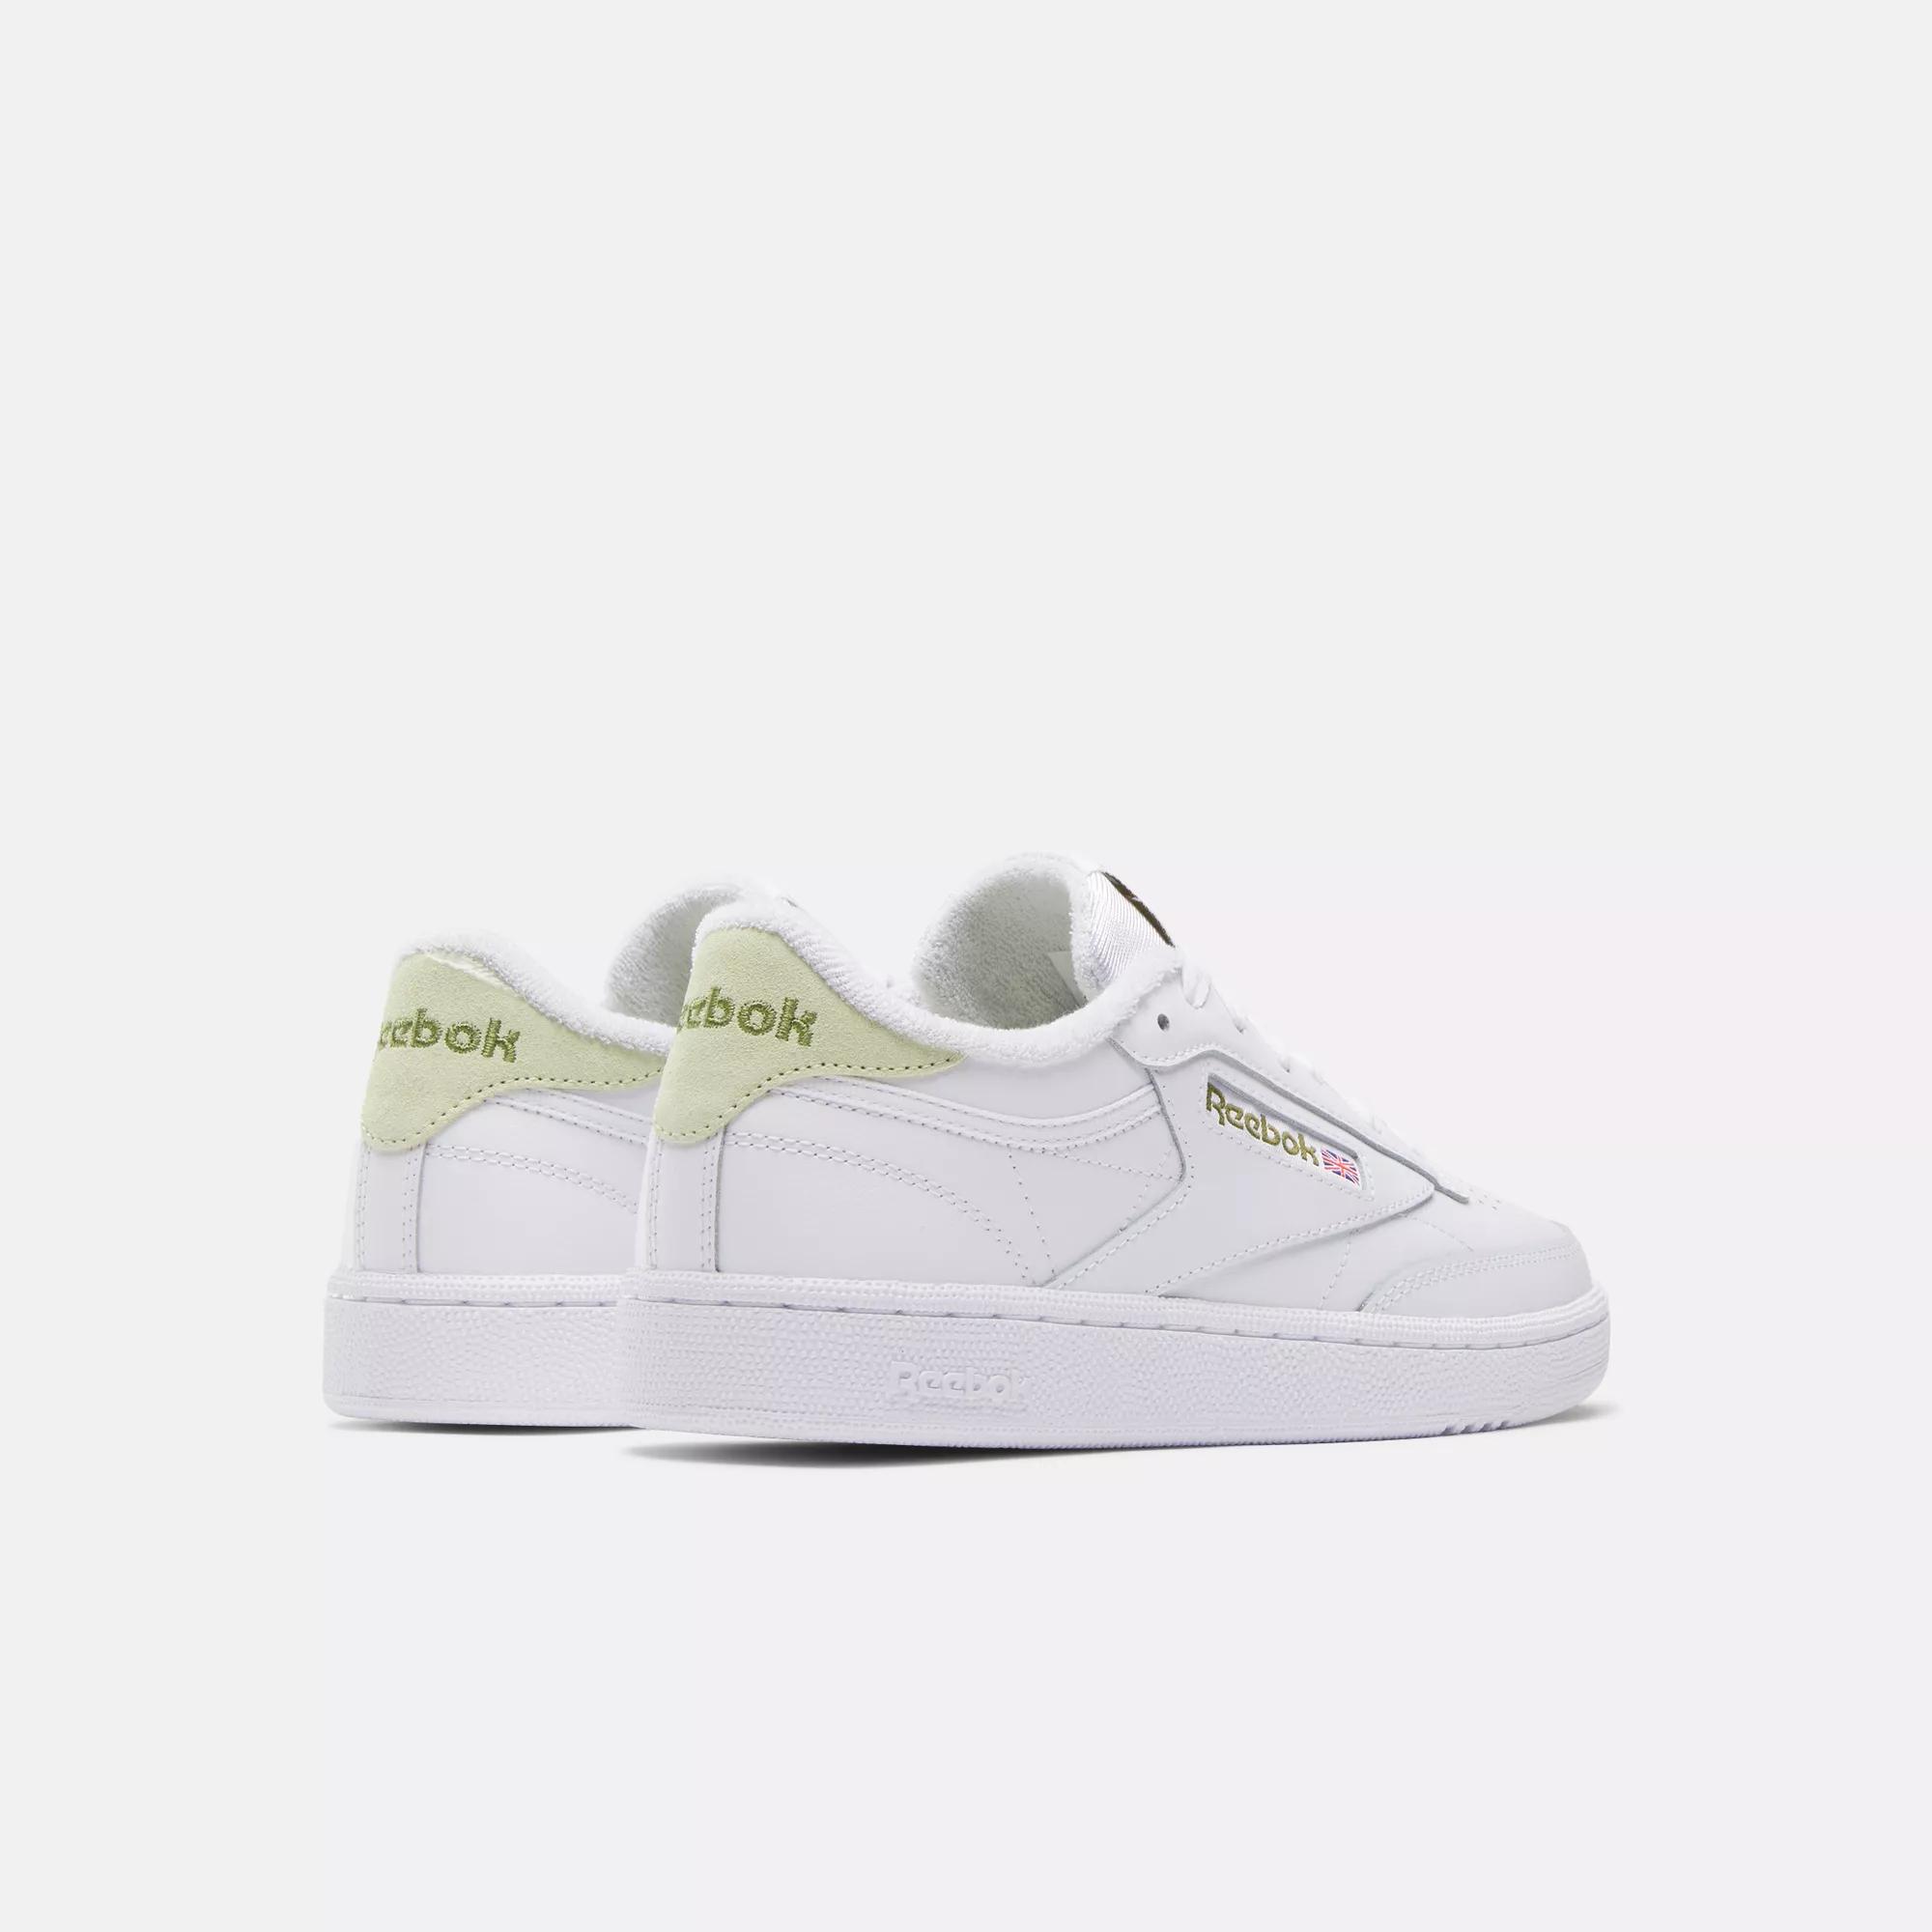 Shoes Women\'s C / 85 White White - | Club Glow Citrus / Reebok